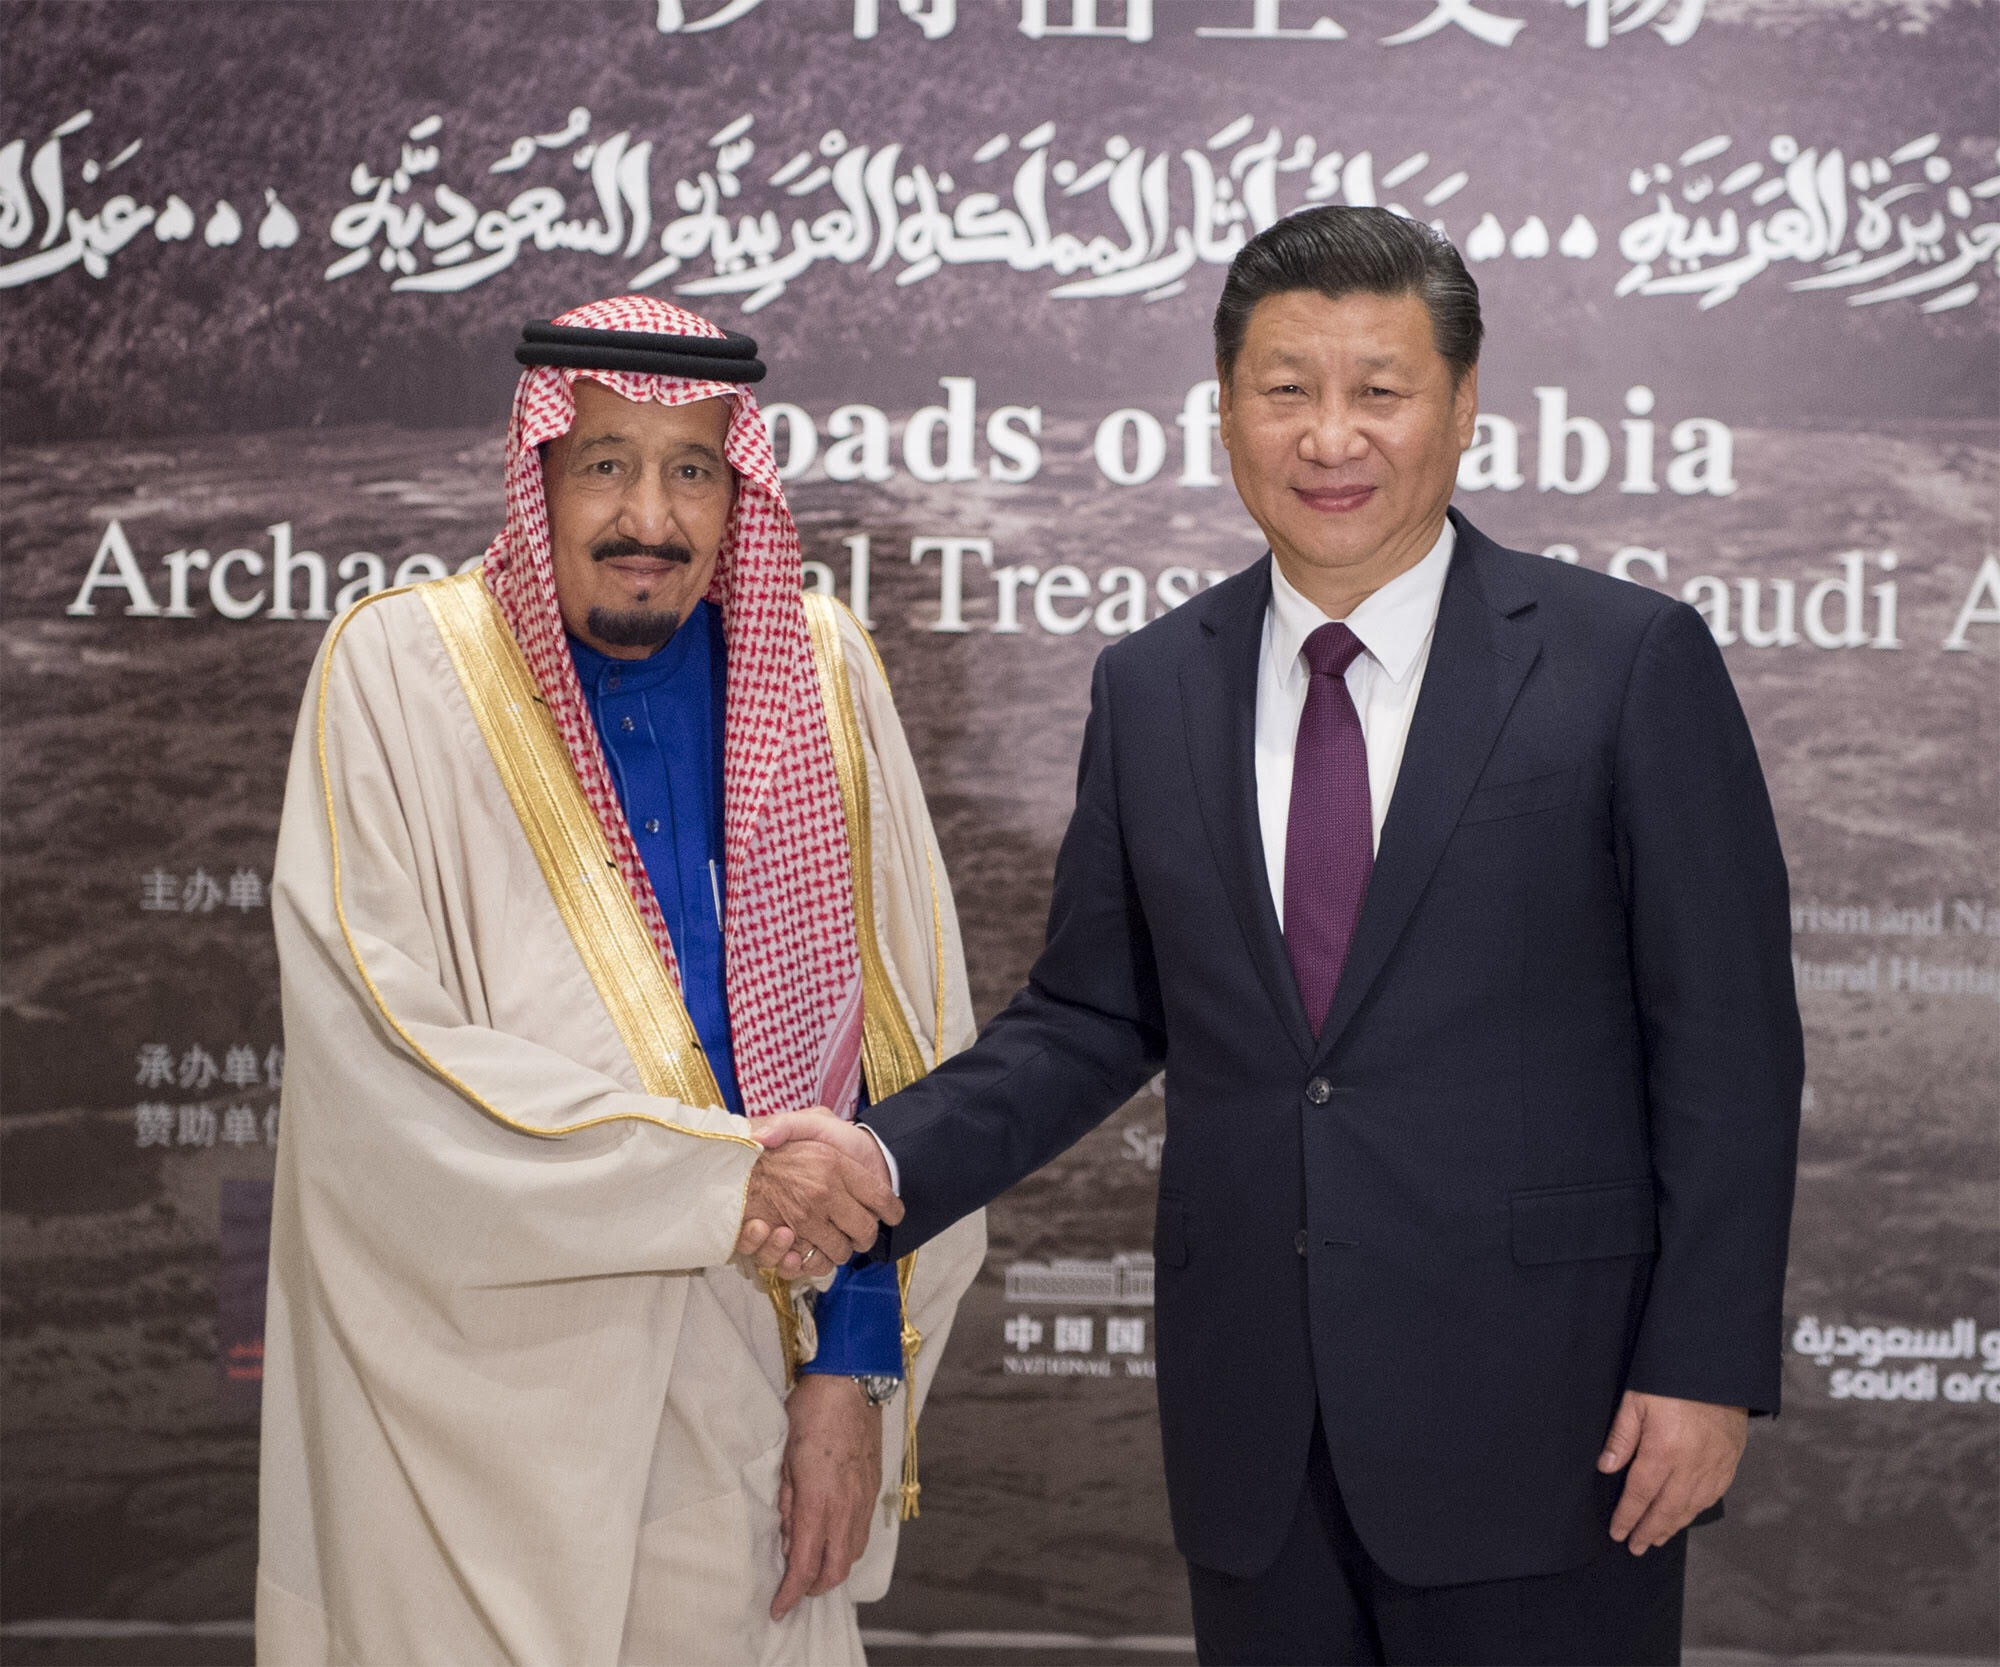 شاهد بالصور .. الملك سلمان ورئيس الصين في ختام معرض طرق التجارة بالجزيرة العربية